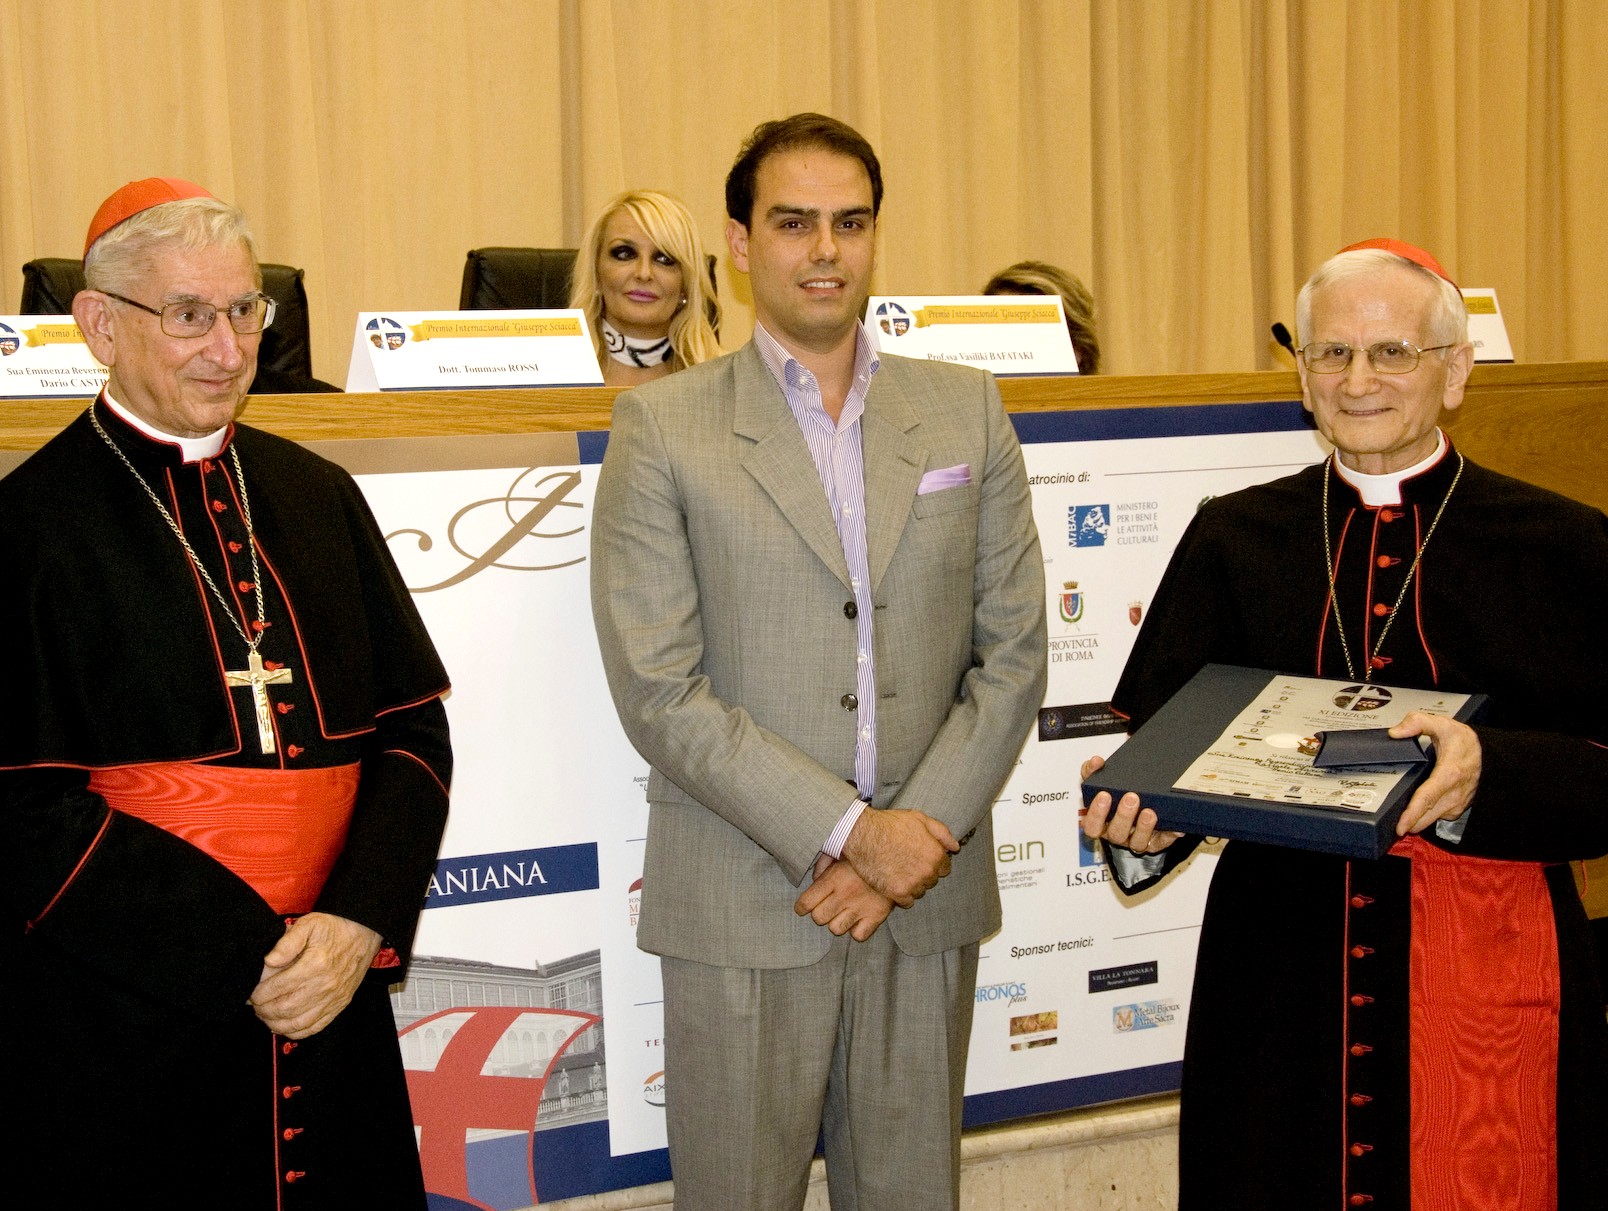 Premio Speciale Cultura al Cardinale Farina